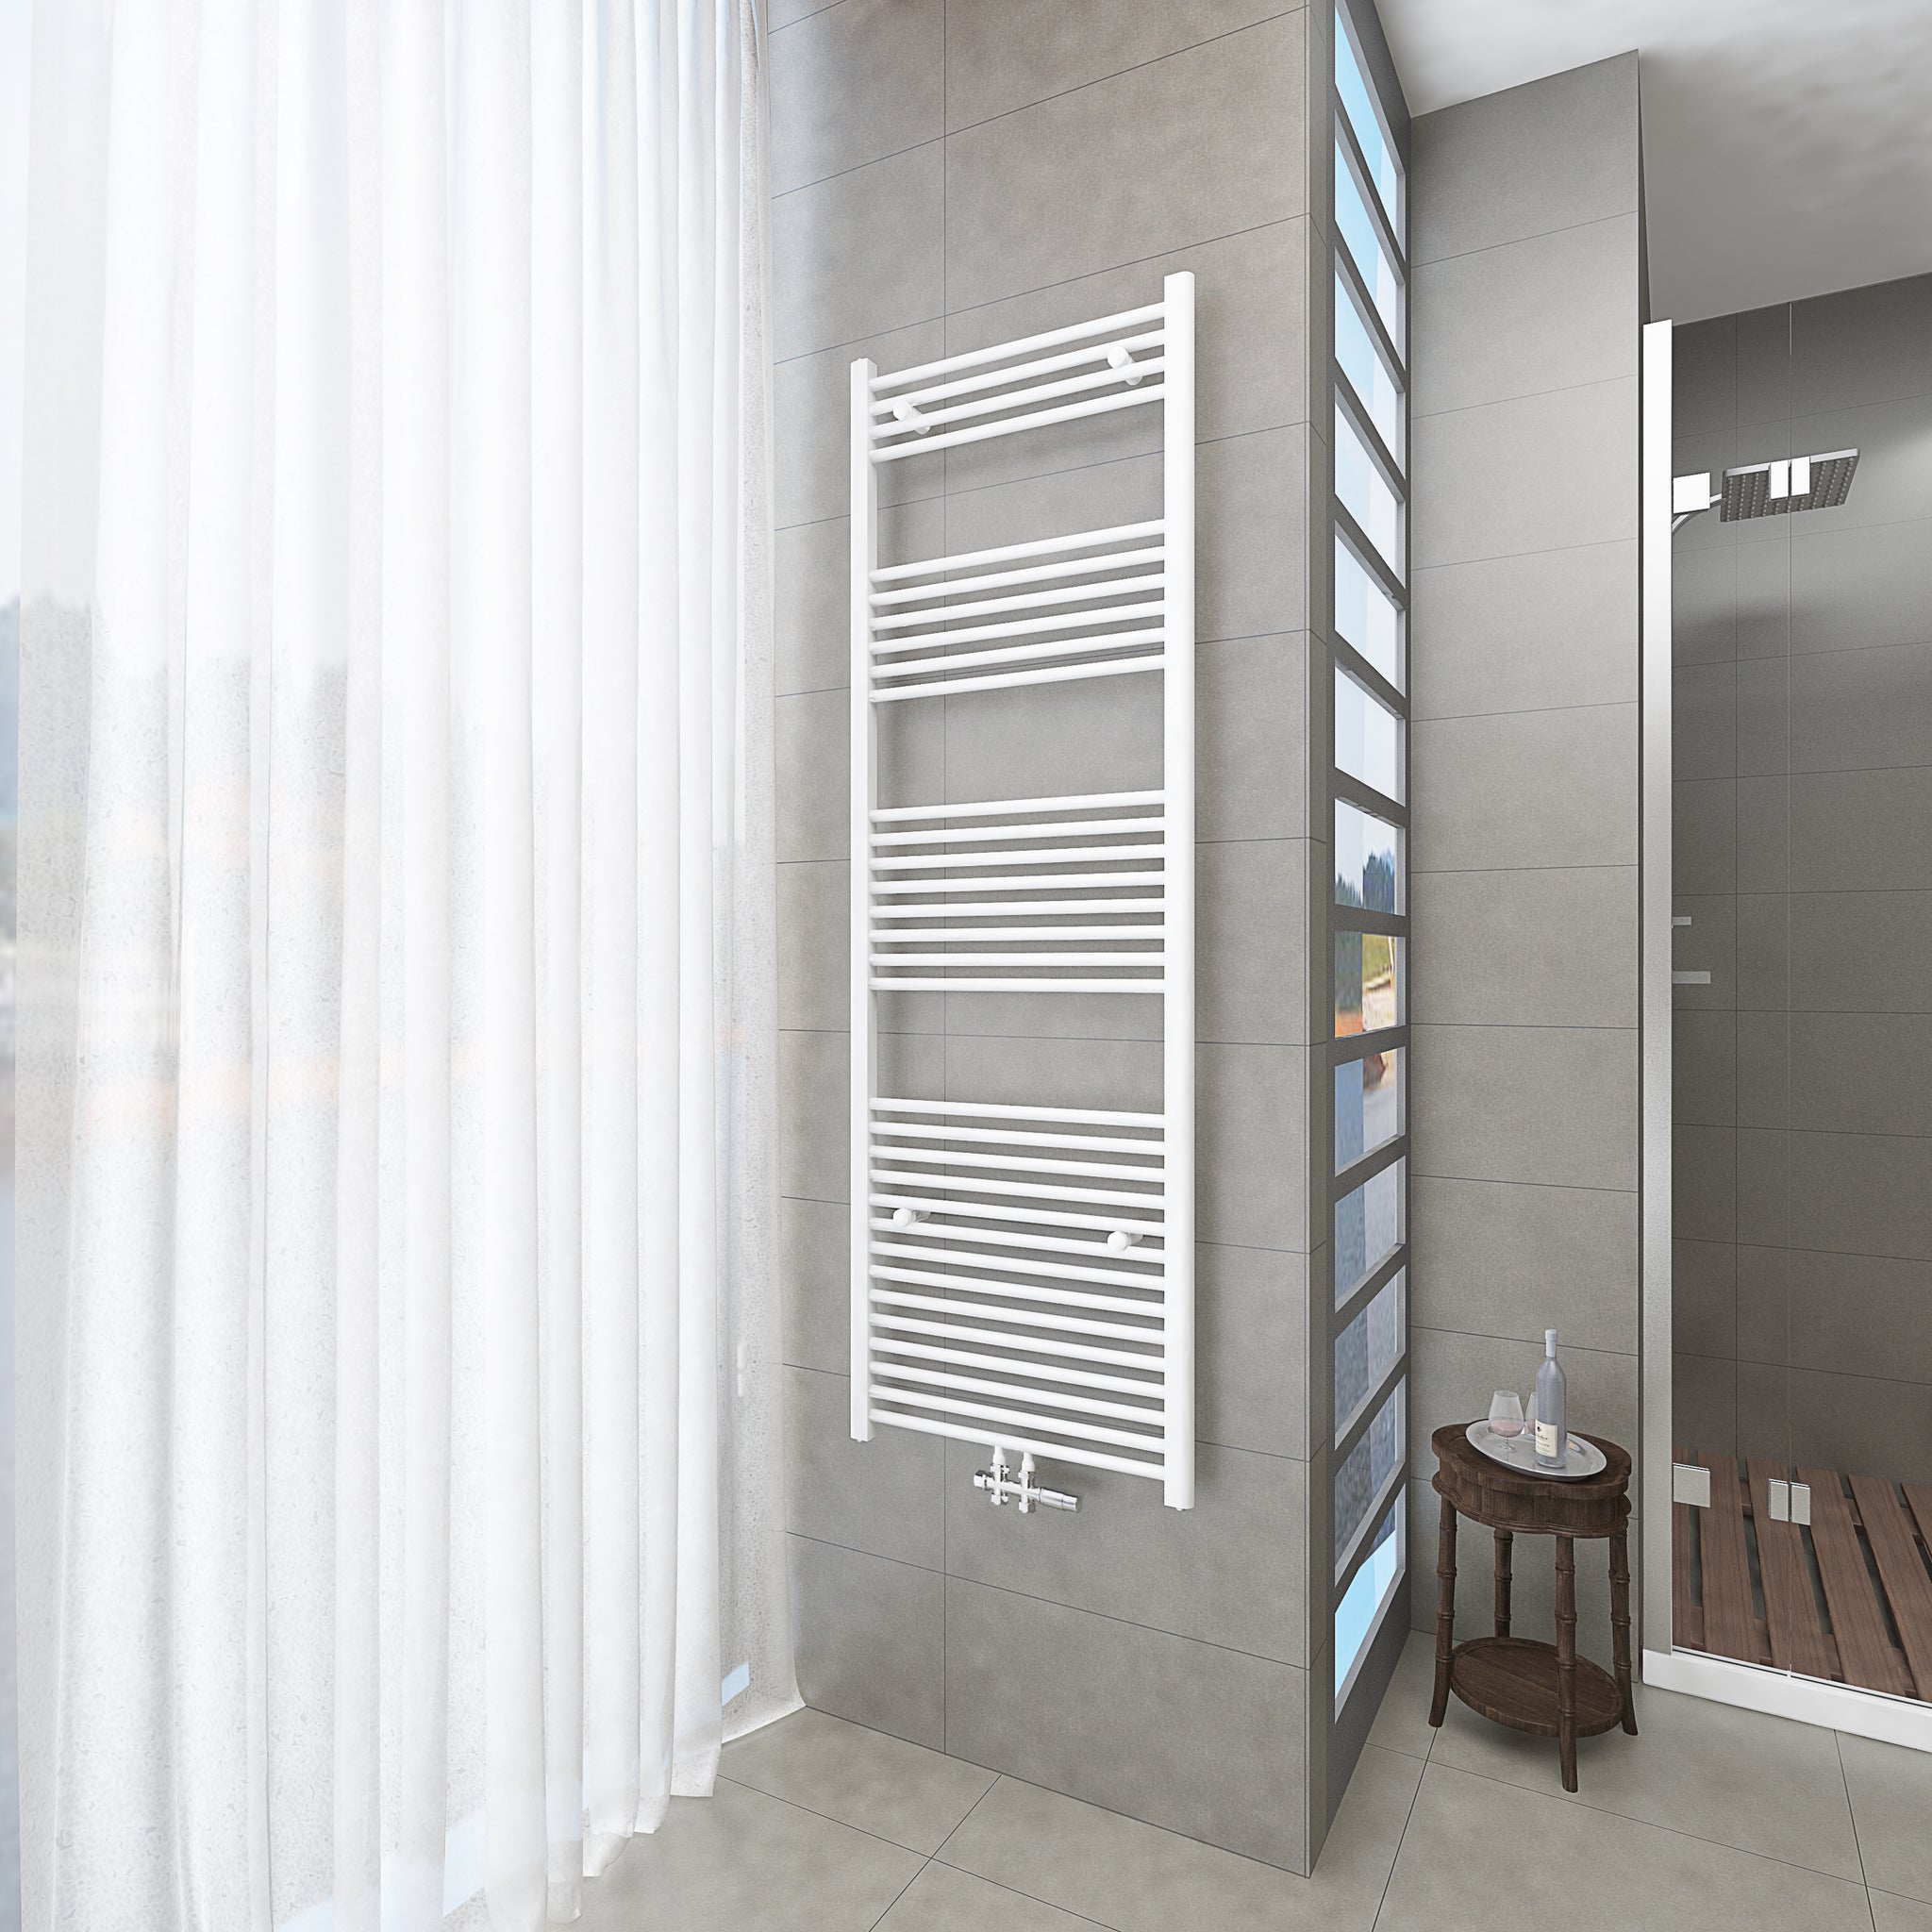 Badheizkörper Weiß - 180x60 CM Heizkörper und Handtuchtrockner in einem - Mittelanschluss - Rauchfreie Kohleheizung für das Badezimmer